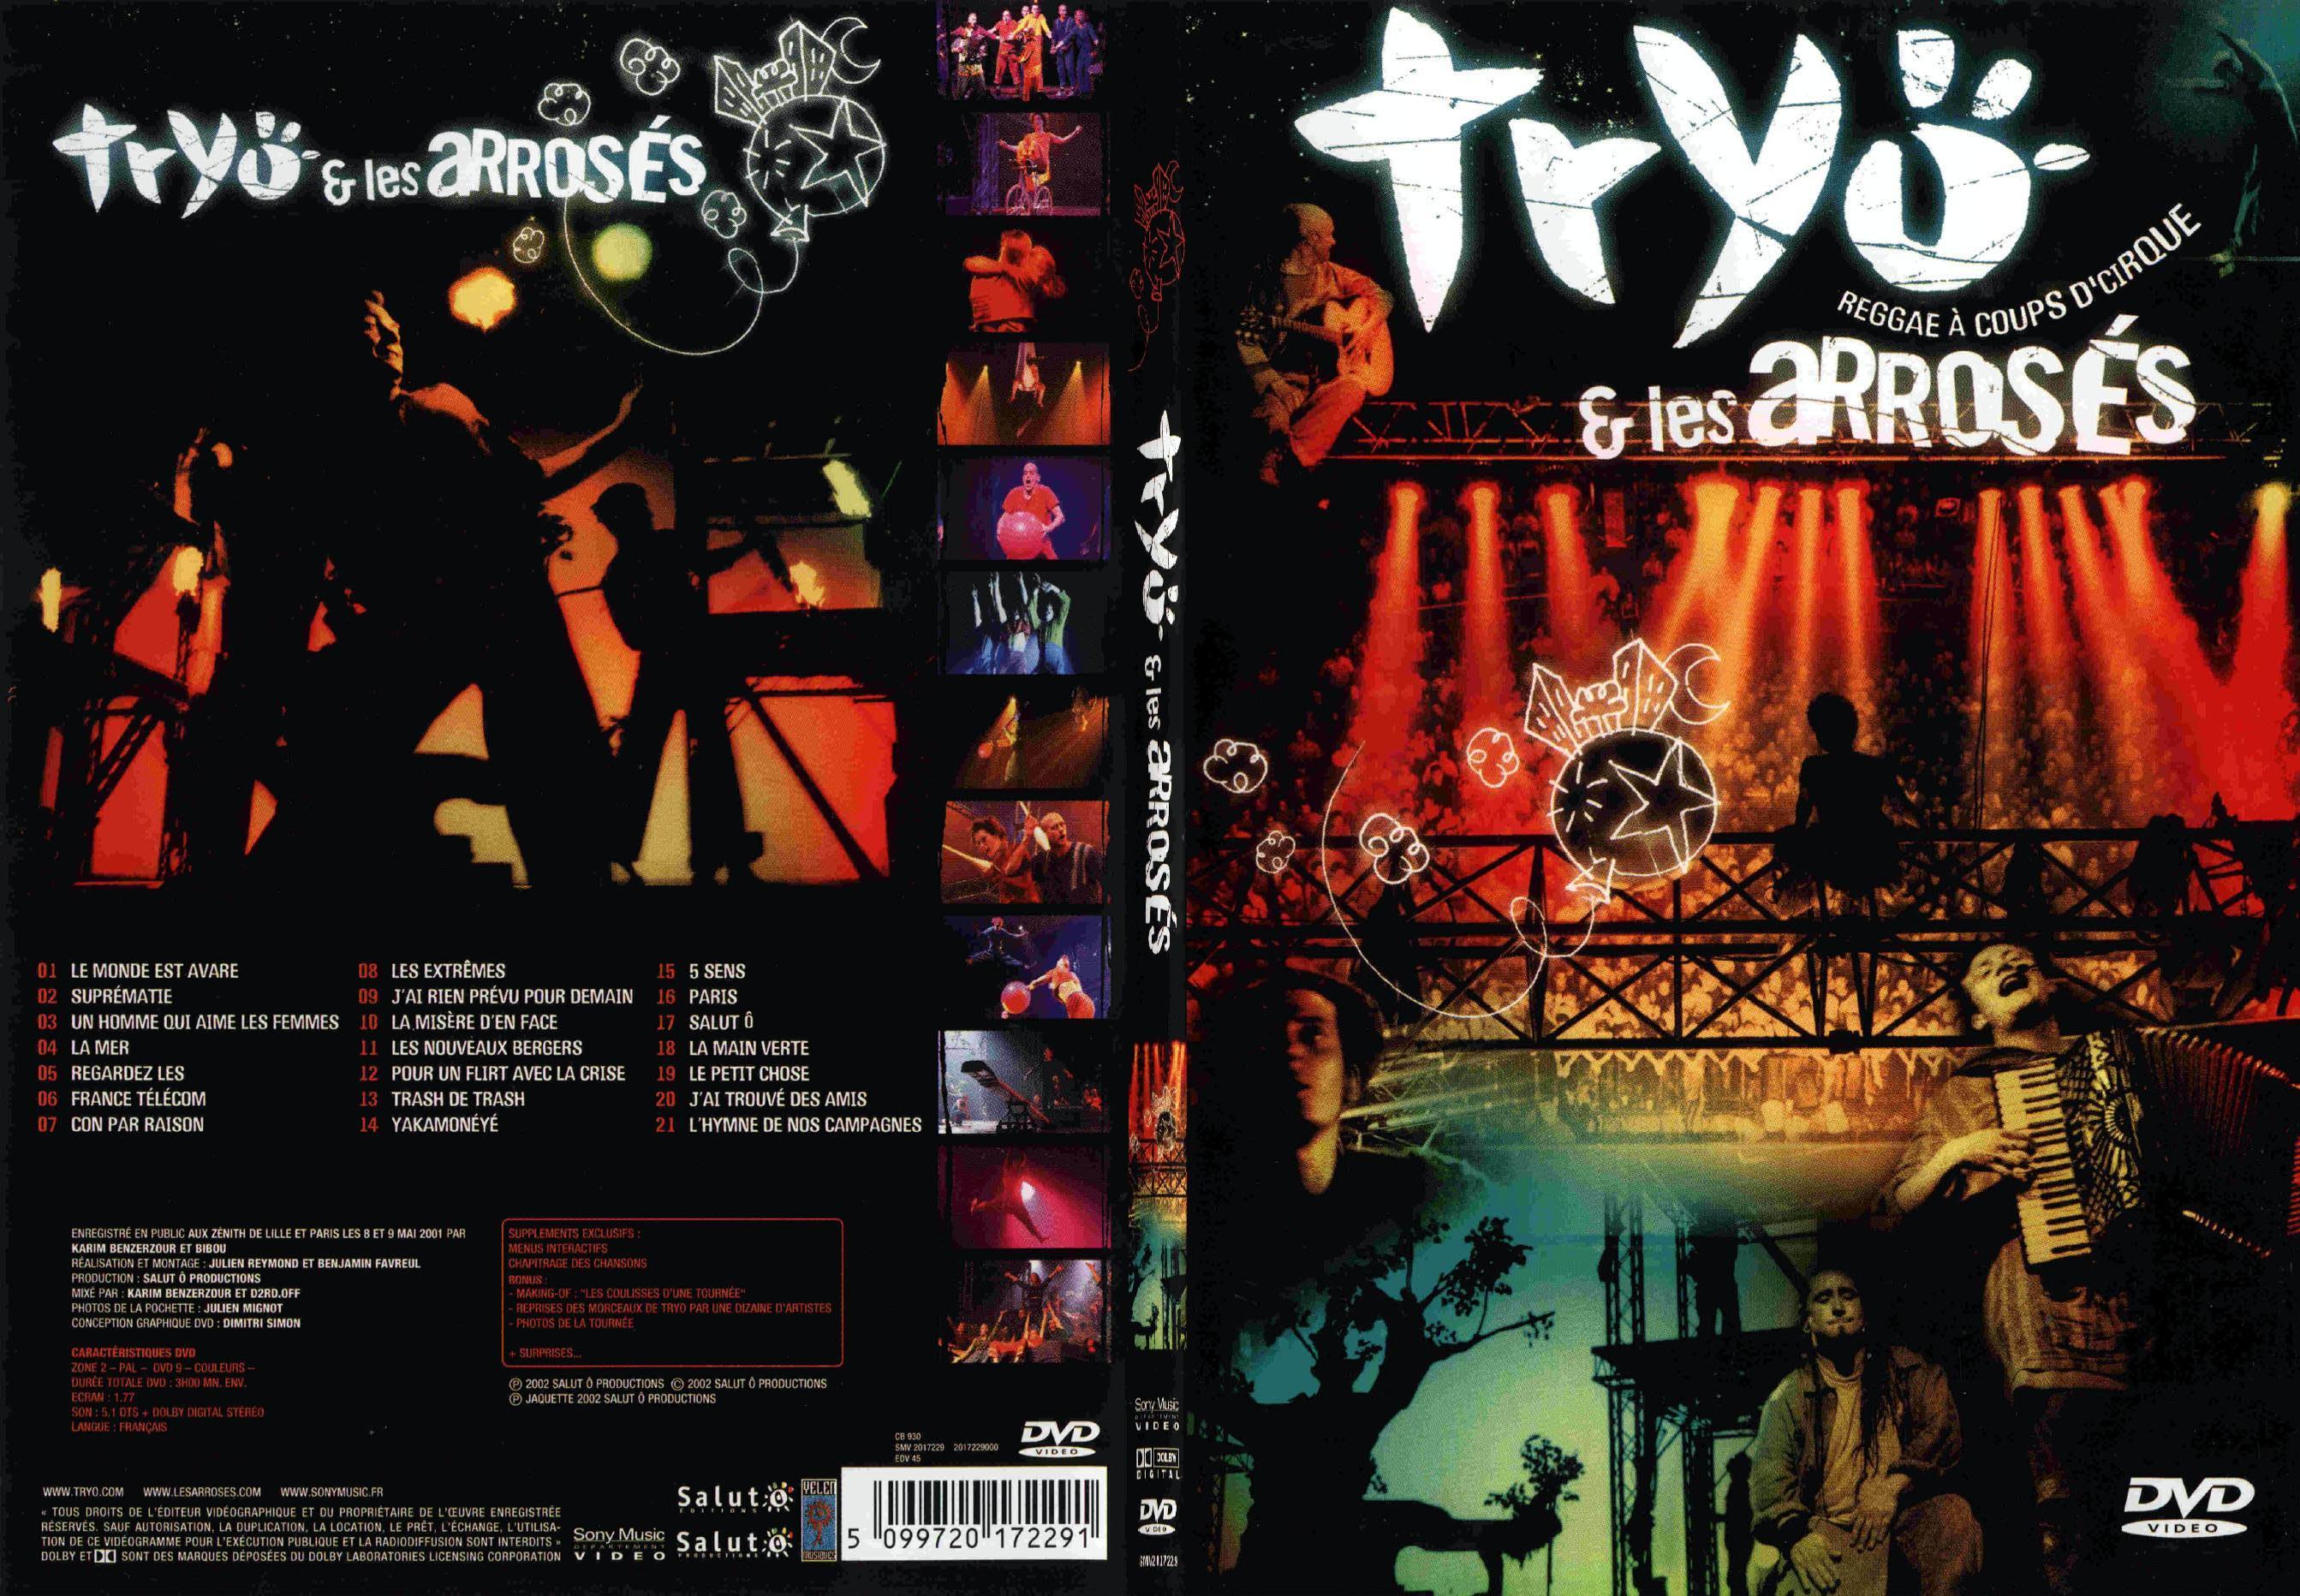 Jaquette DVD Tryo et les arross - SLIM